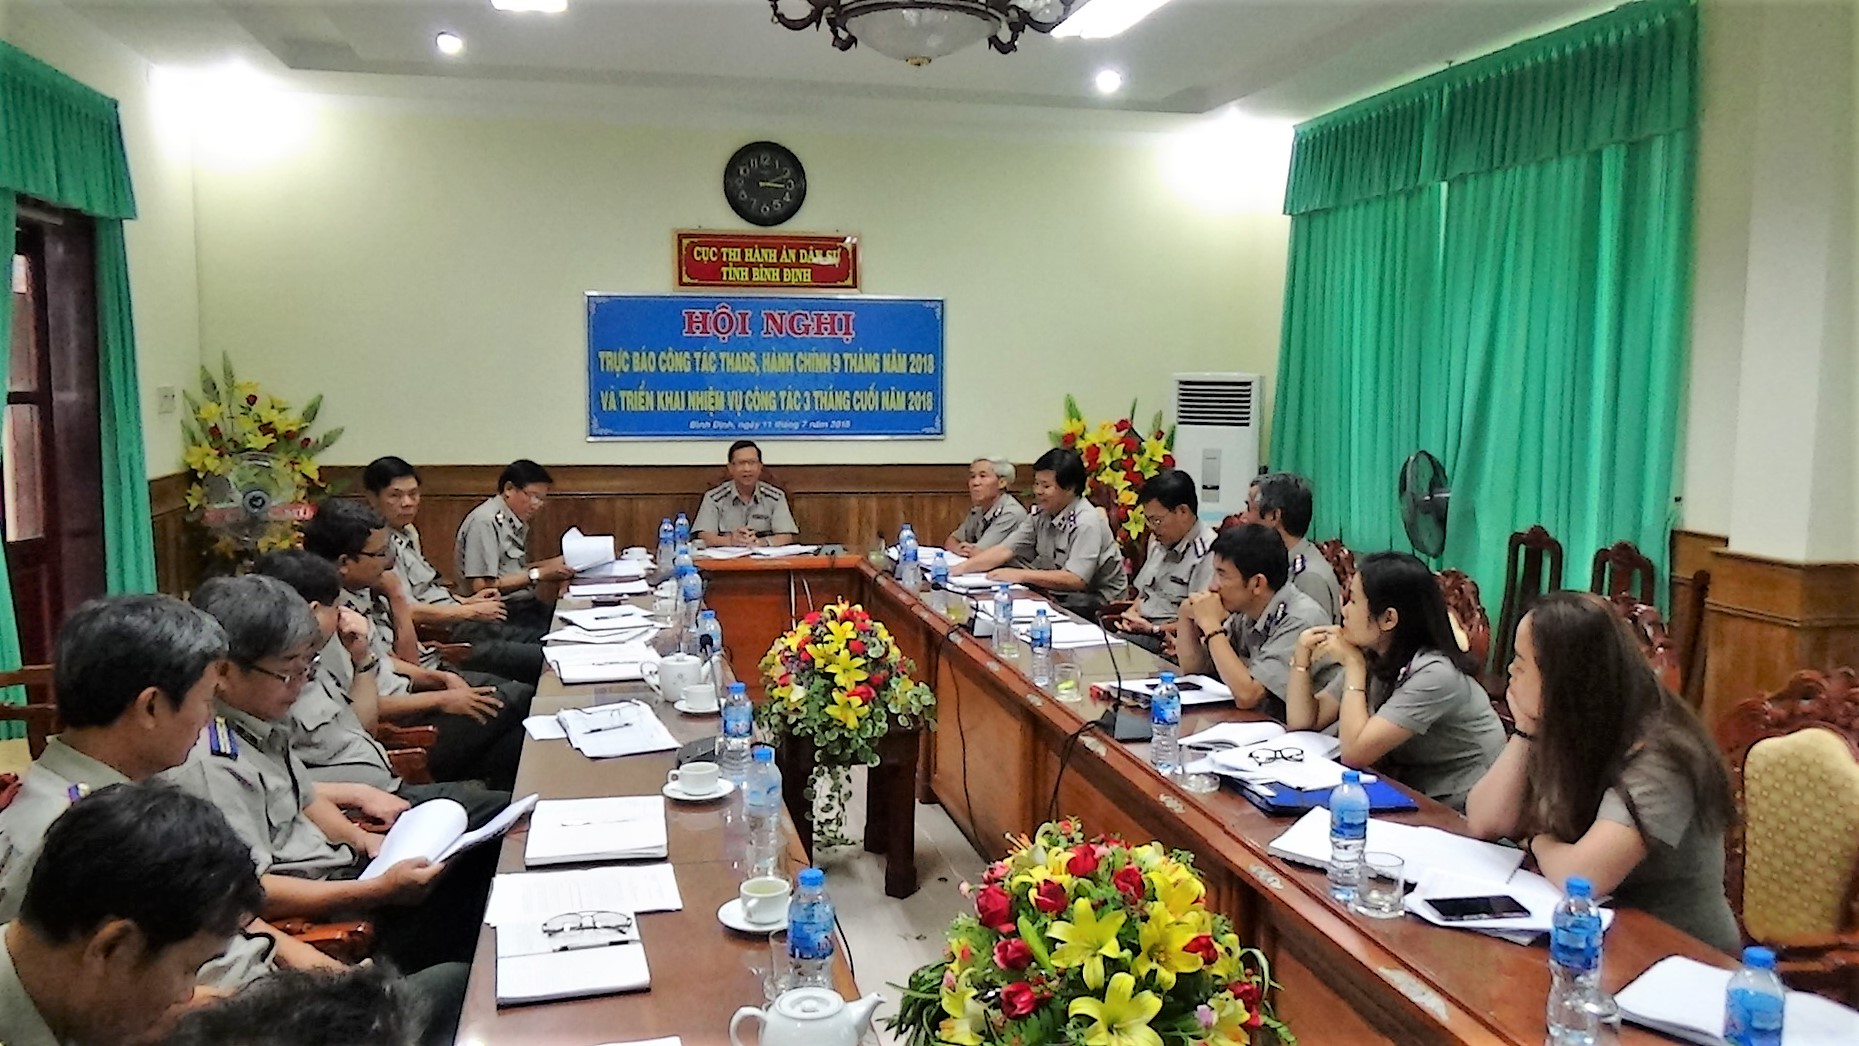 Cục Thi hành án dân sự tỉnh Bình Định tổ chức Hội nghị trực báo công tác Thi hành án dân sự, hành chính 9 tháng năm 2018 và triển khai nhiệm vụ công tác 3 tháng cuối năm 2018